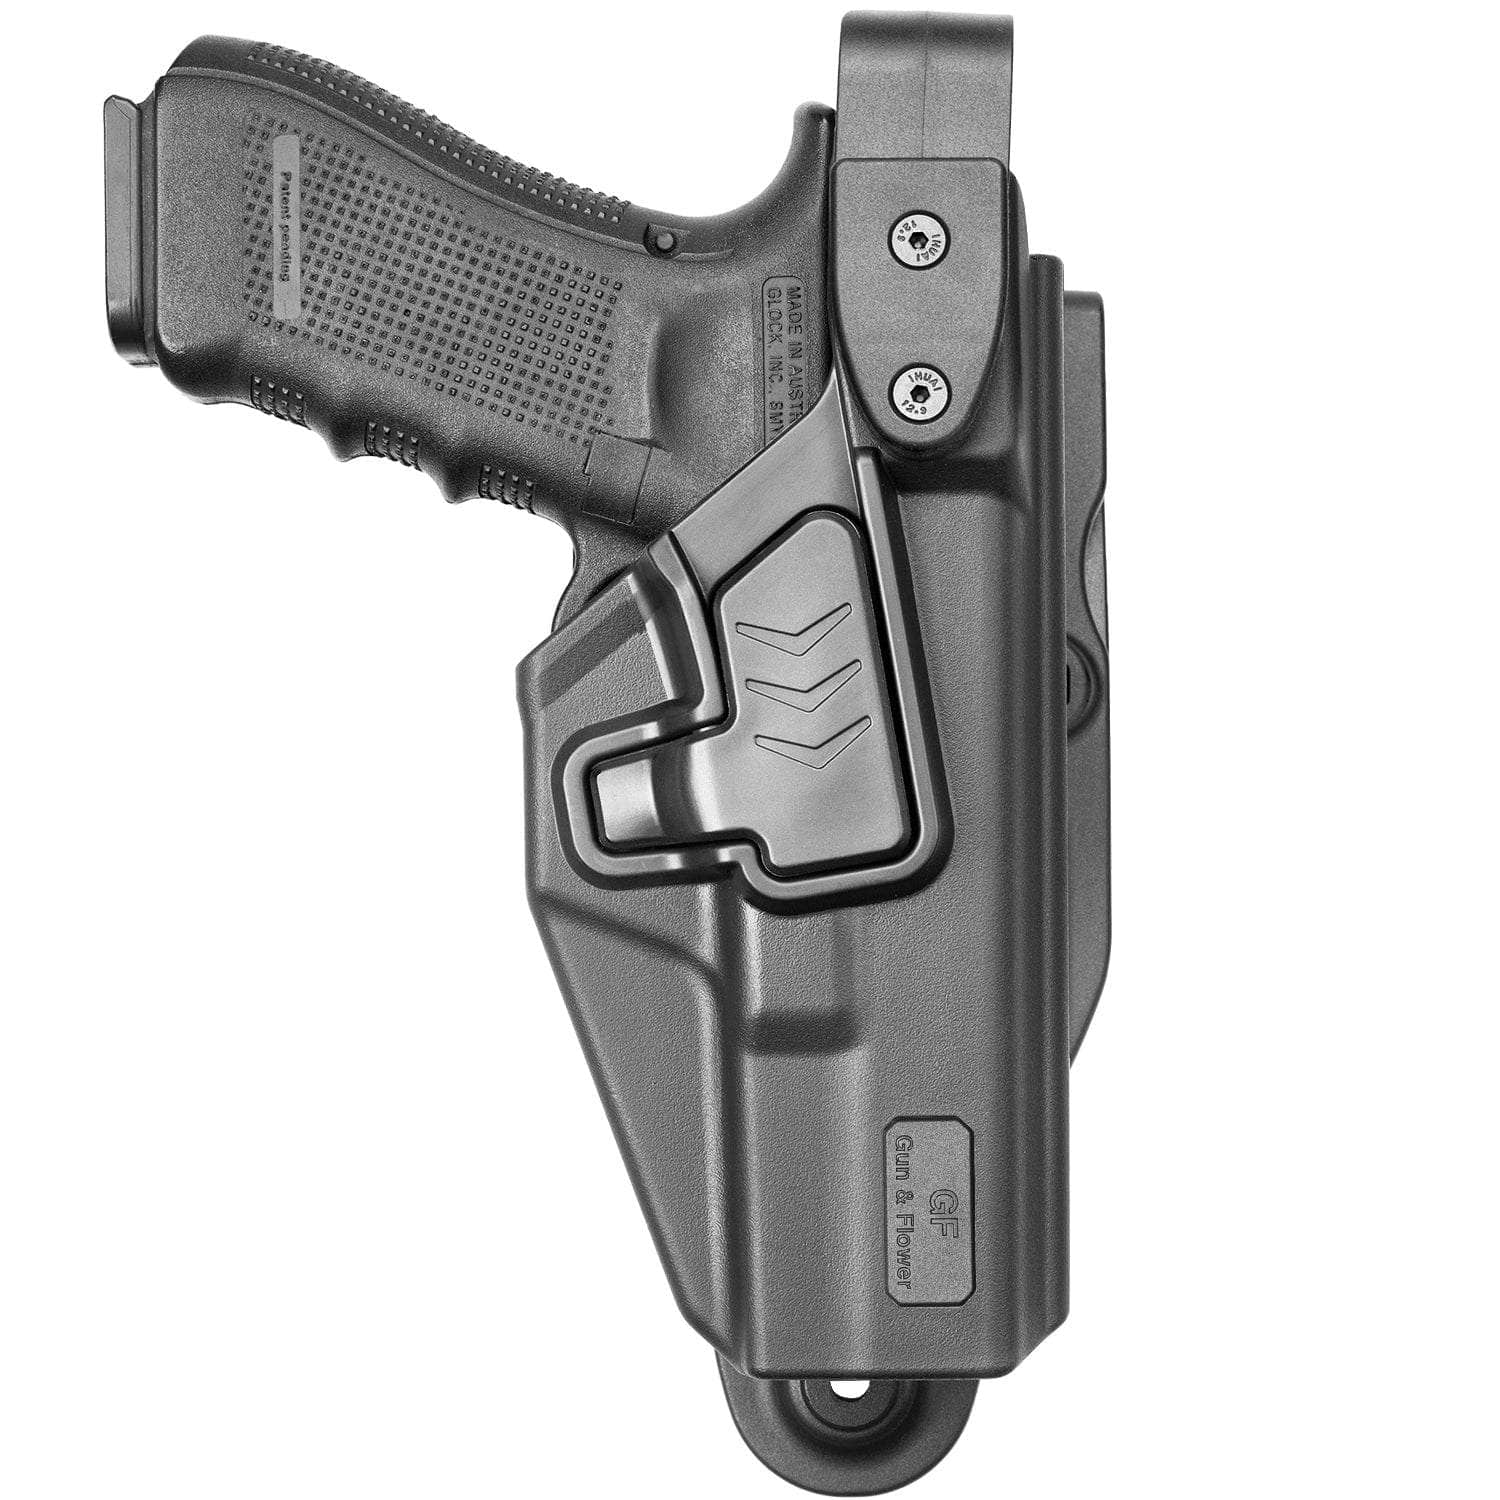 Buy Glock 17 Level 2 Duty Holster Online